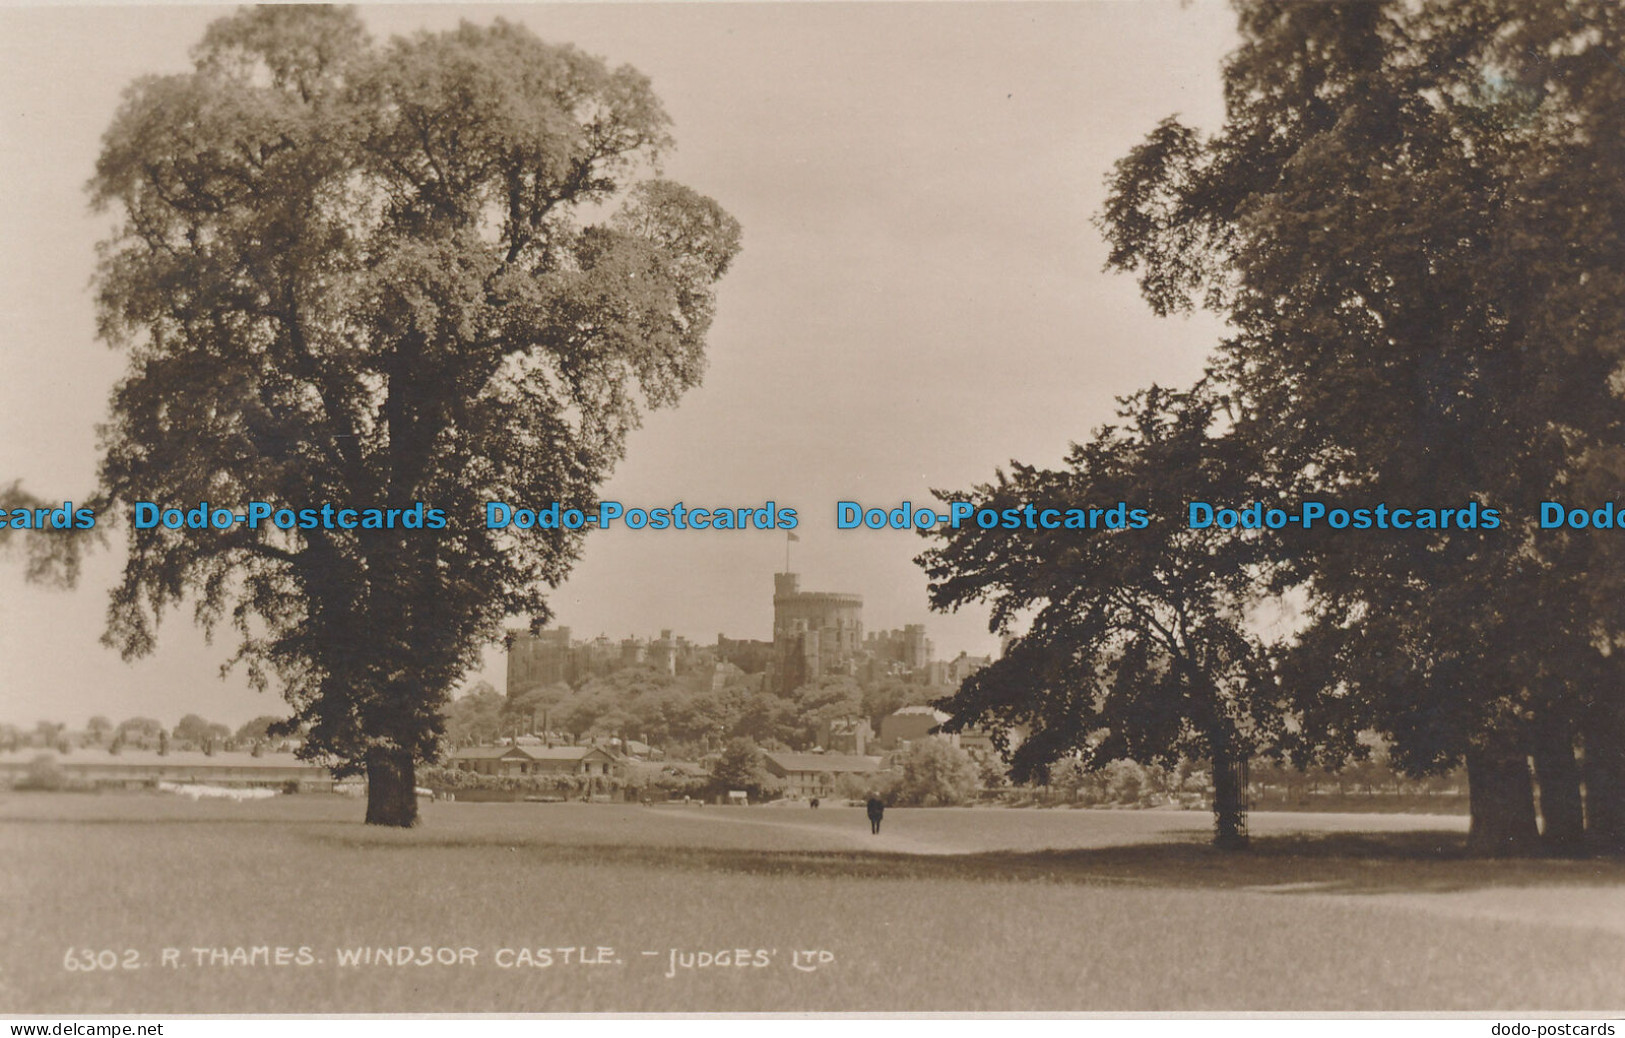 R049127 R. Thames Windsor Castle. Judges Ltd. No 6302 - World